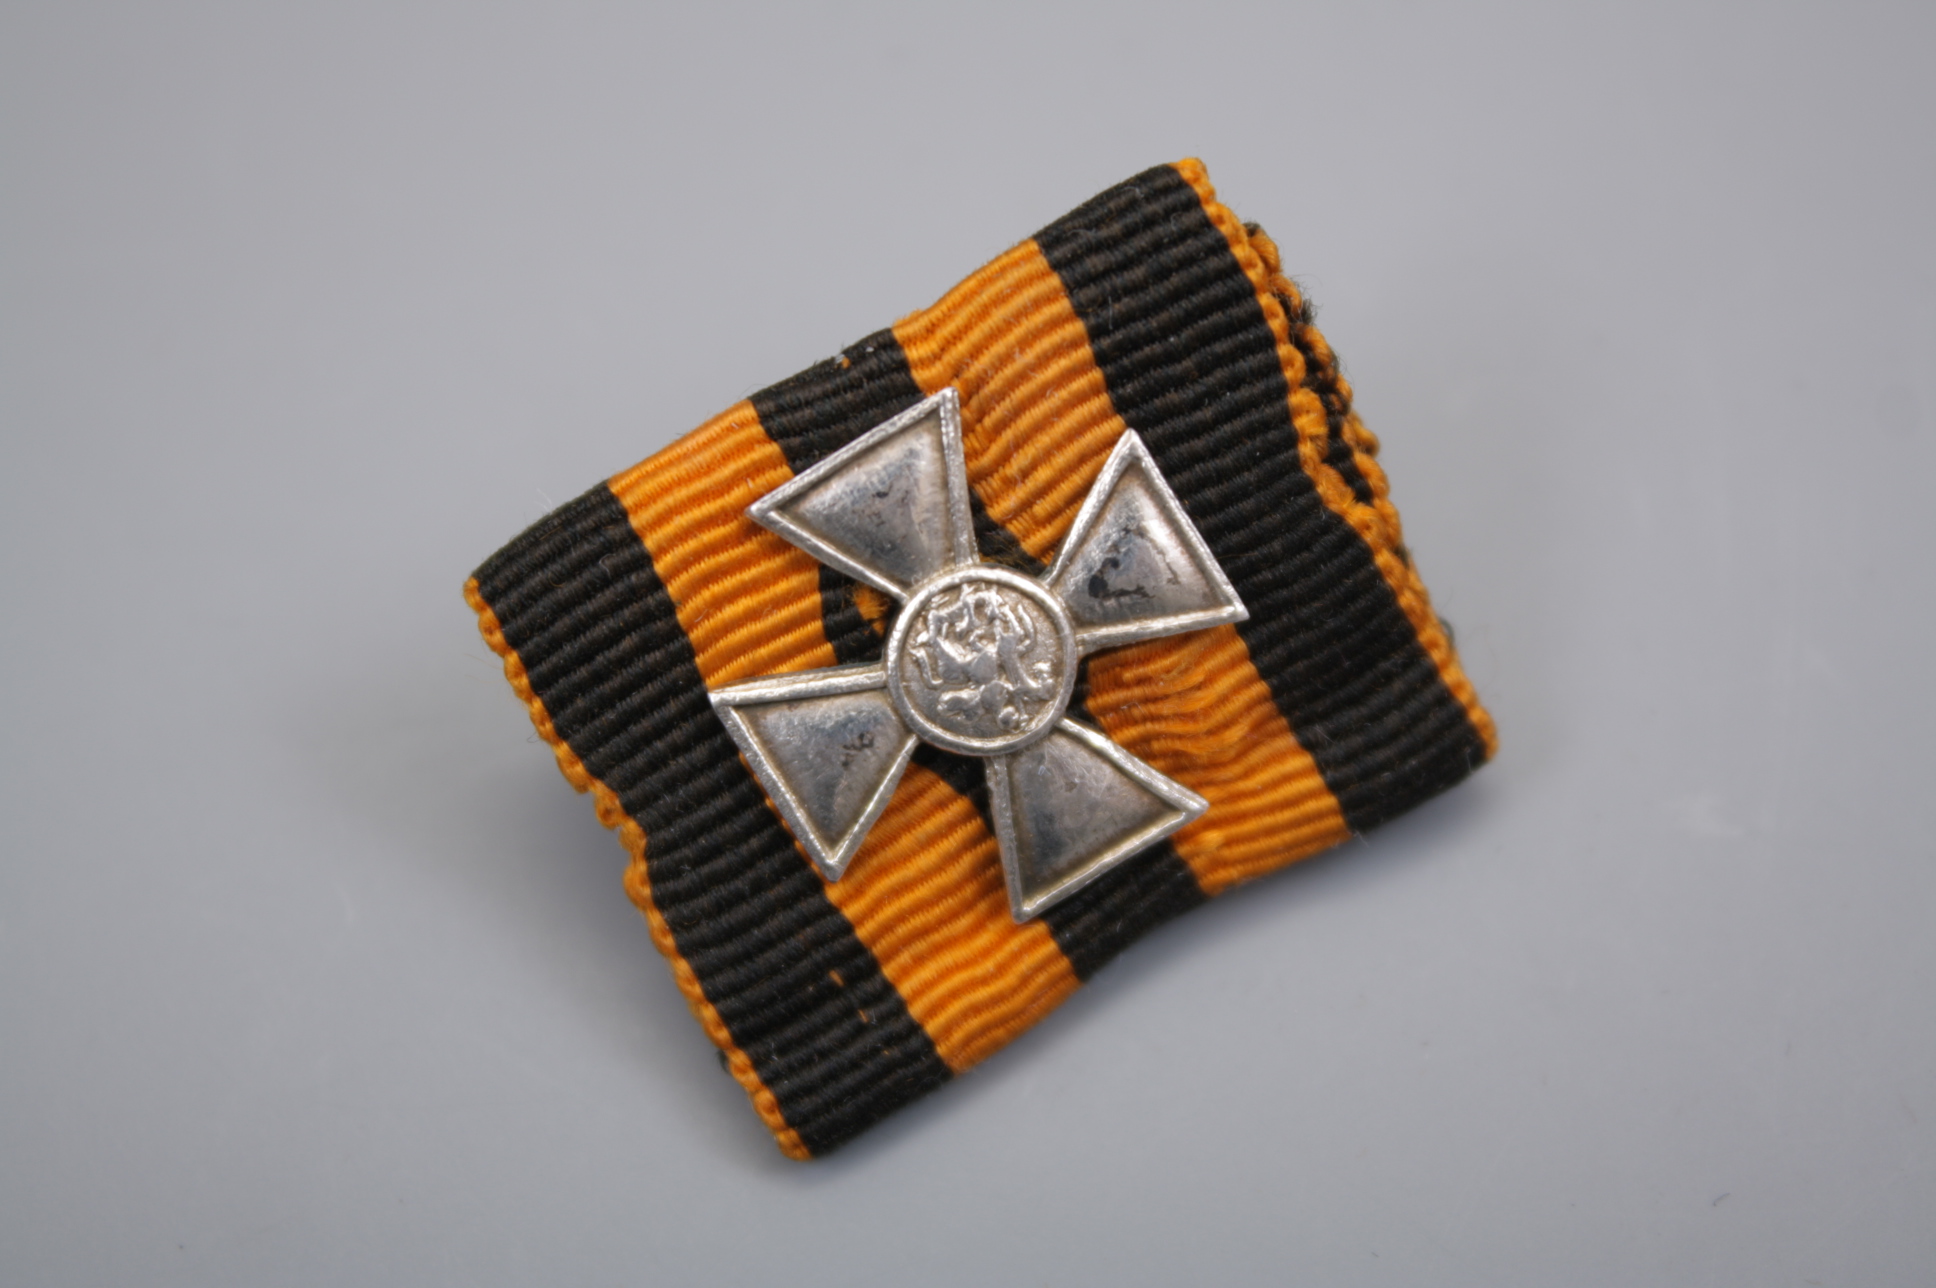 Фрачный знак отличия Военного ордена Св. Георгия (Георгиевский крест), Российская Империя.